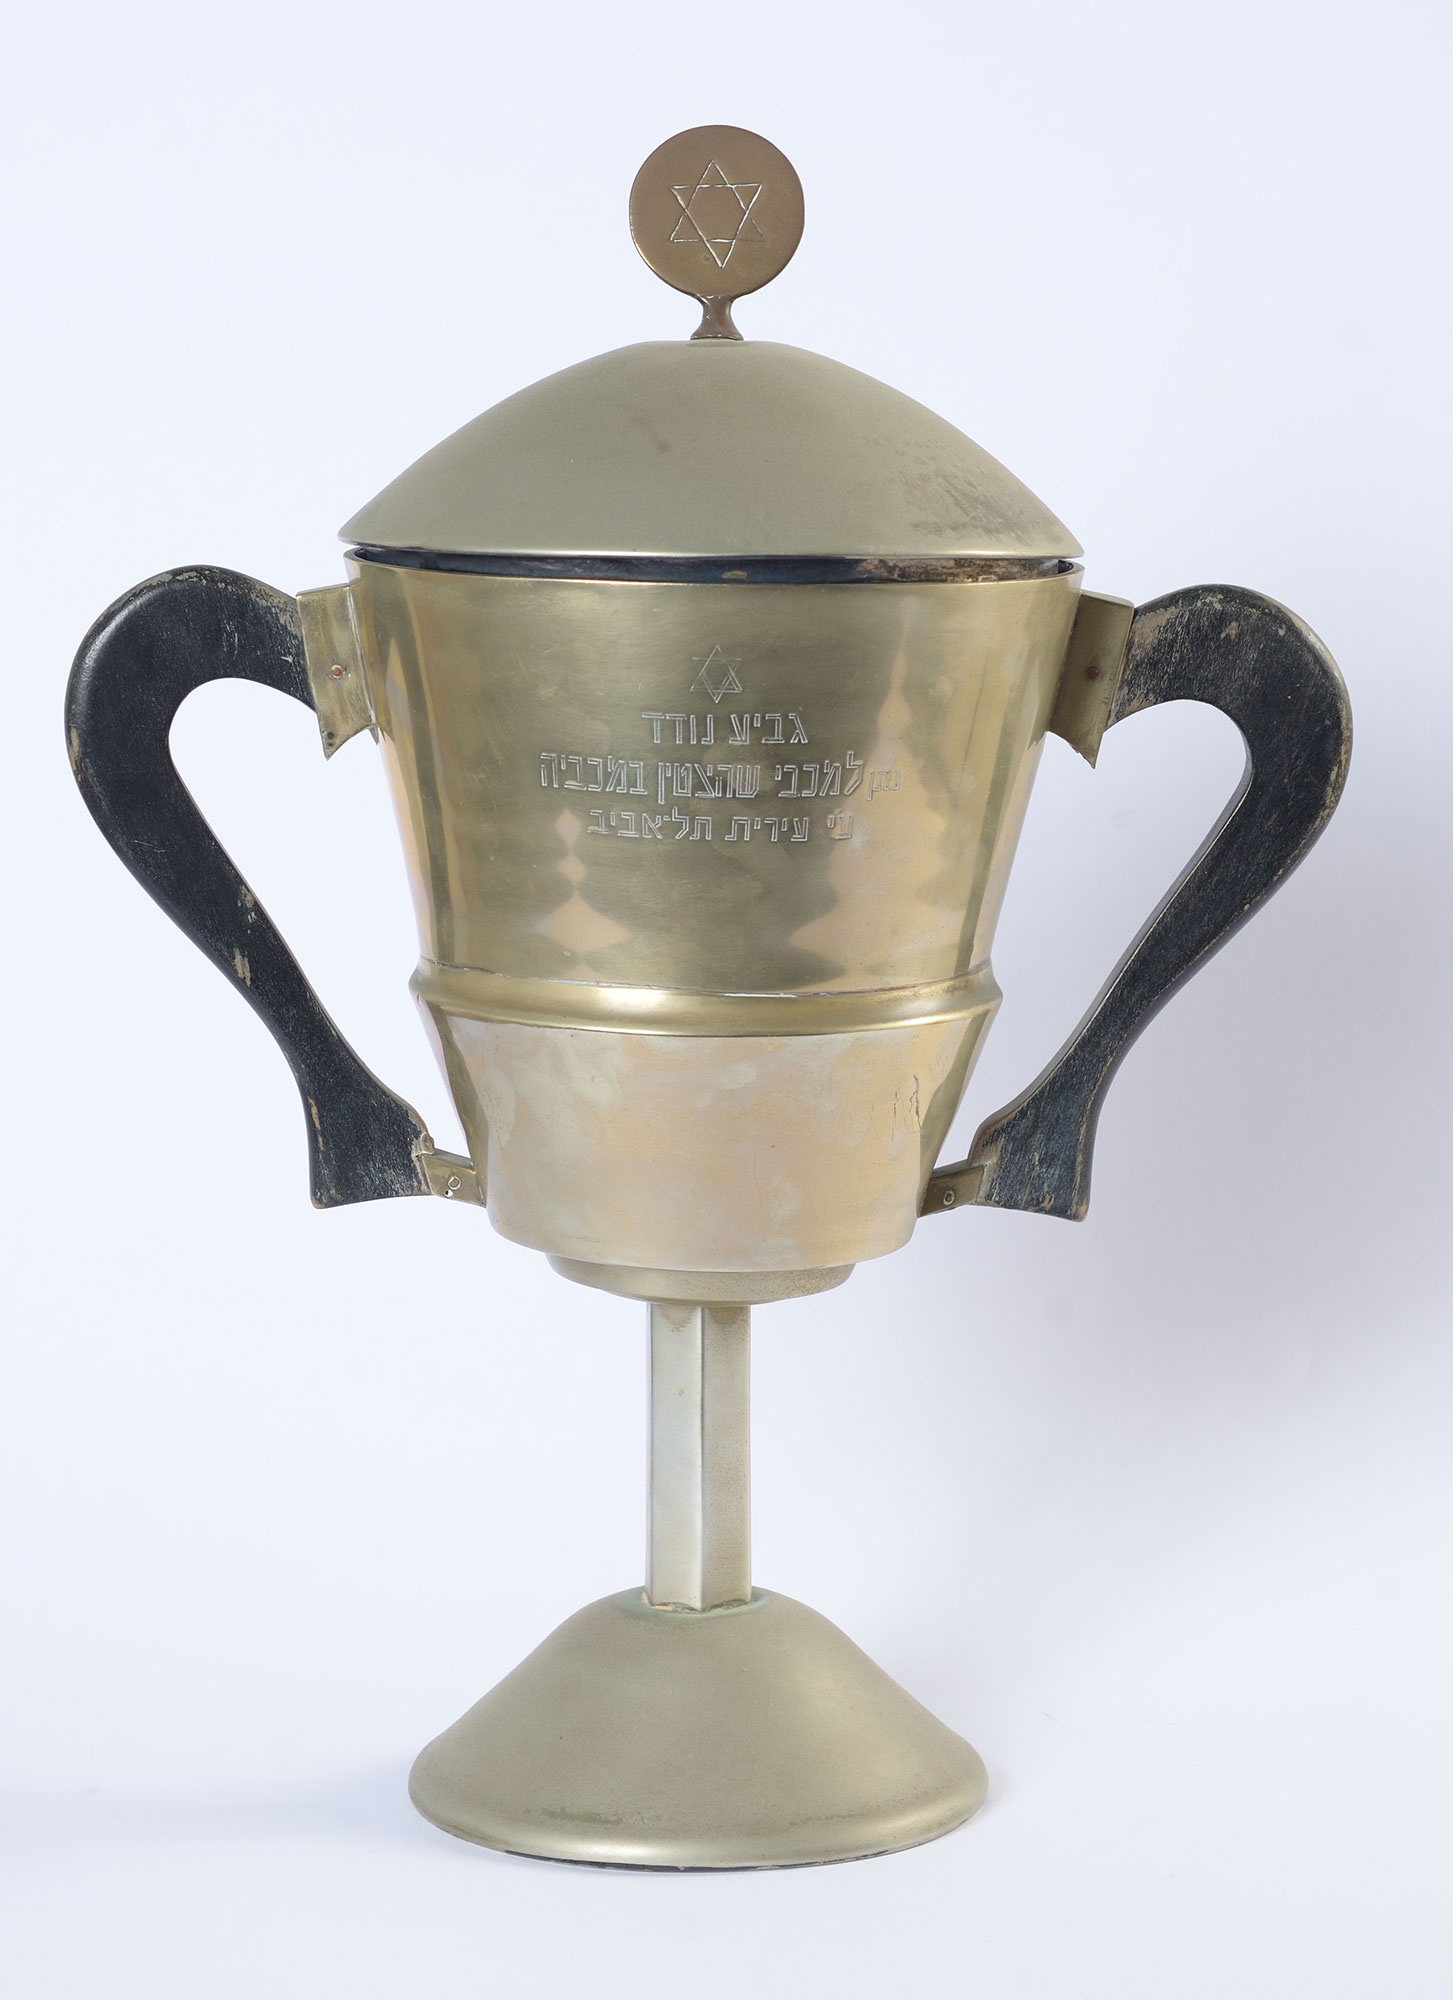 Награда &"Выдающемуся атлету «Маккабиады»", врученная Тель-Авивской мэрией легкоатлетке Марыле Фрайвальд на играх «Маккабиады» 1935 года